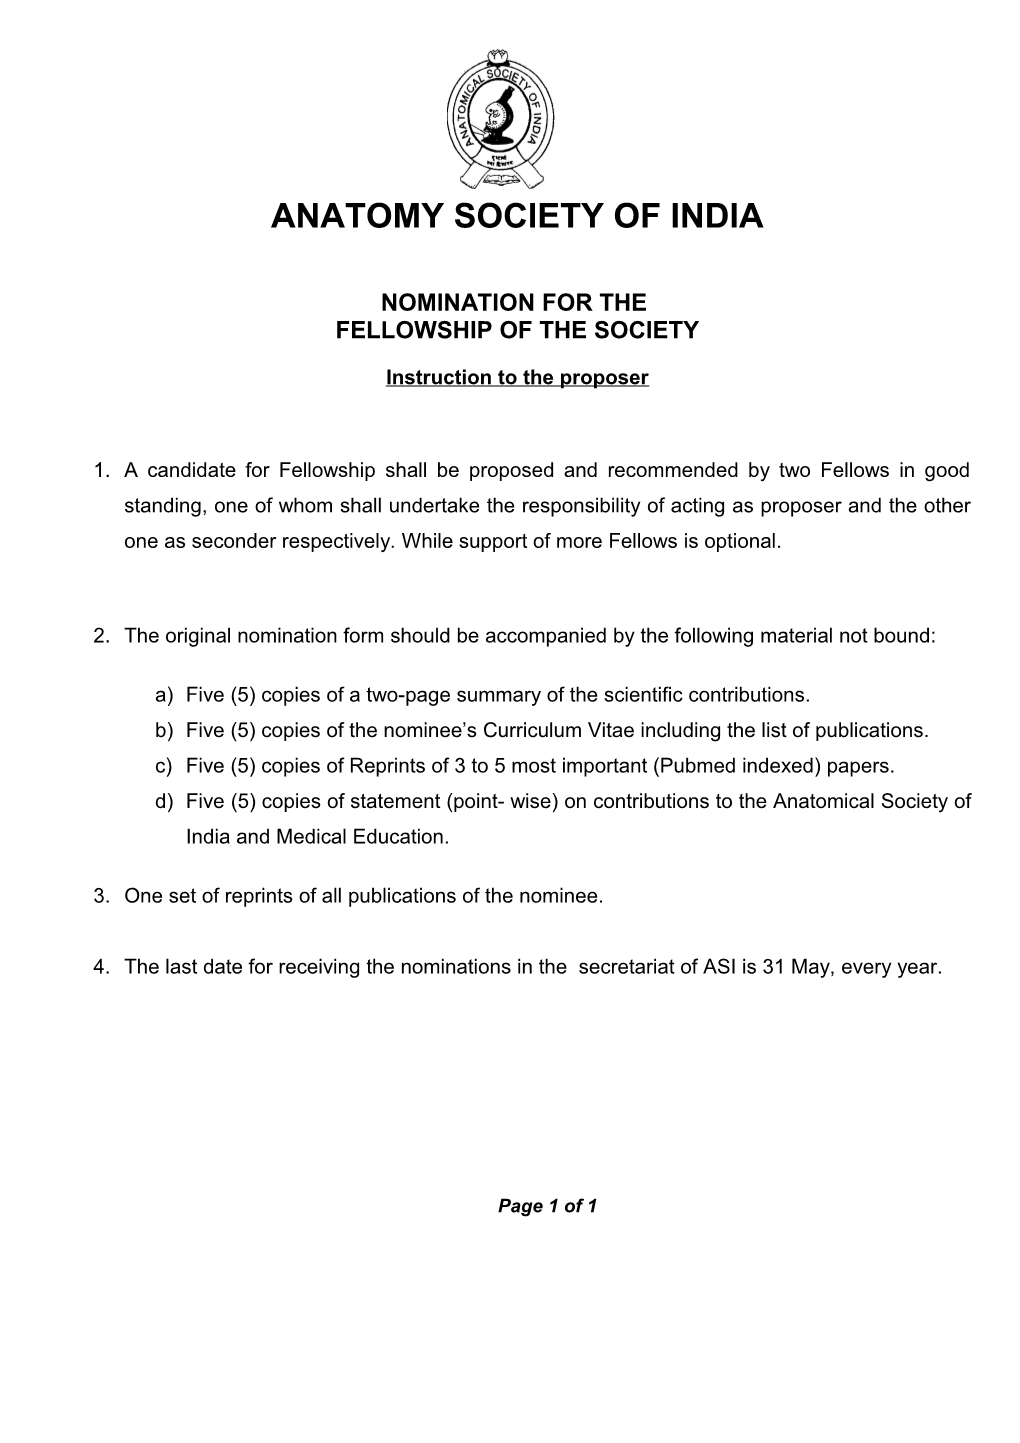 Anatomy Society of India